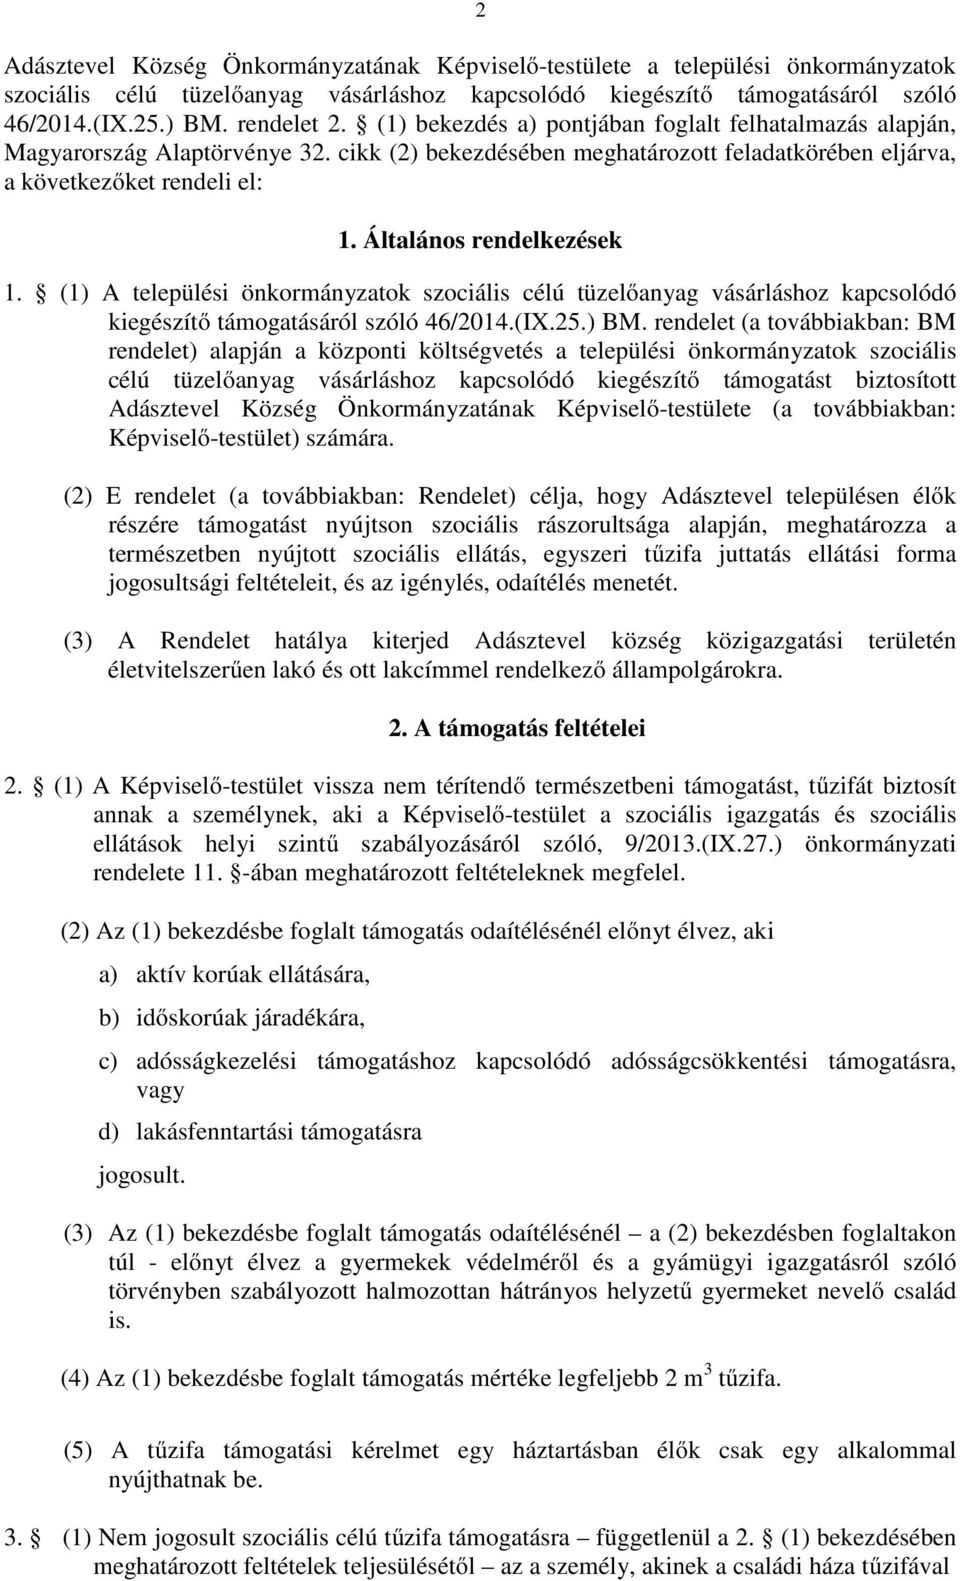 Általános rendelkezések 1. (1) A települési önkormányzatok szociális célú tüzelőanyag vásárláshoz kapcsolódó kiegészítő támogatásáról szóló 46/2014.(IX.25.) BM.